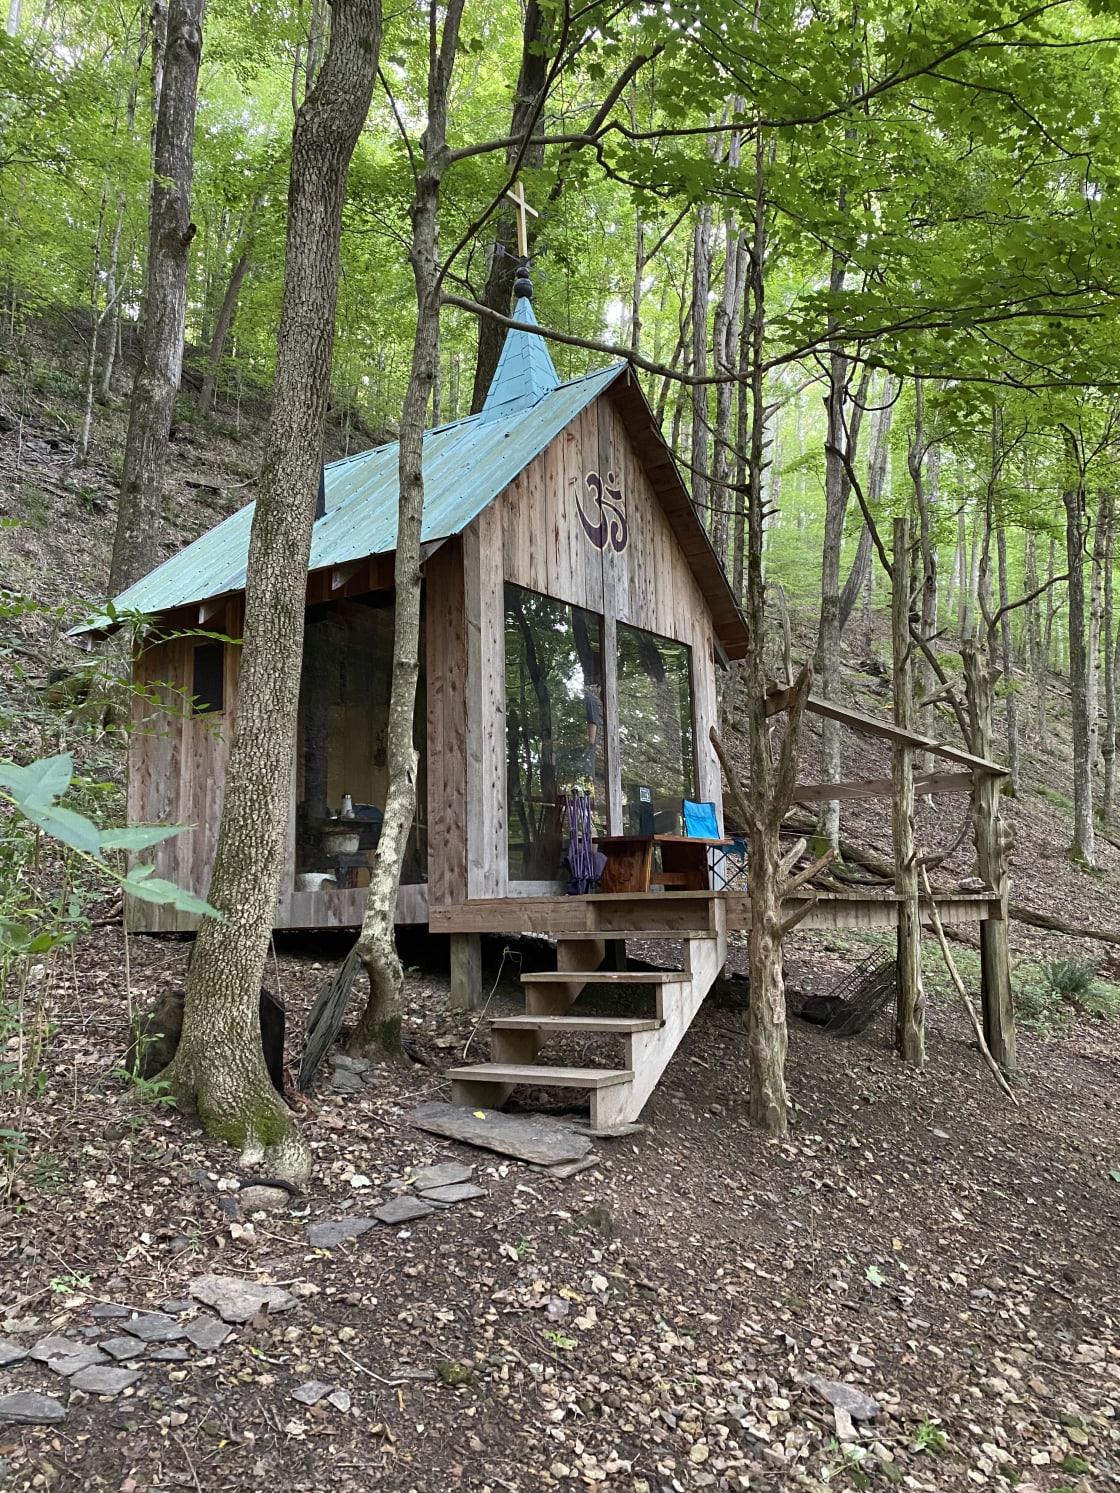 The beautiful cabin!